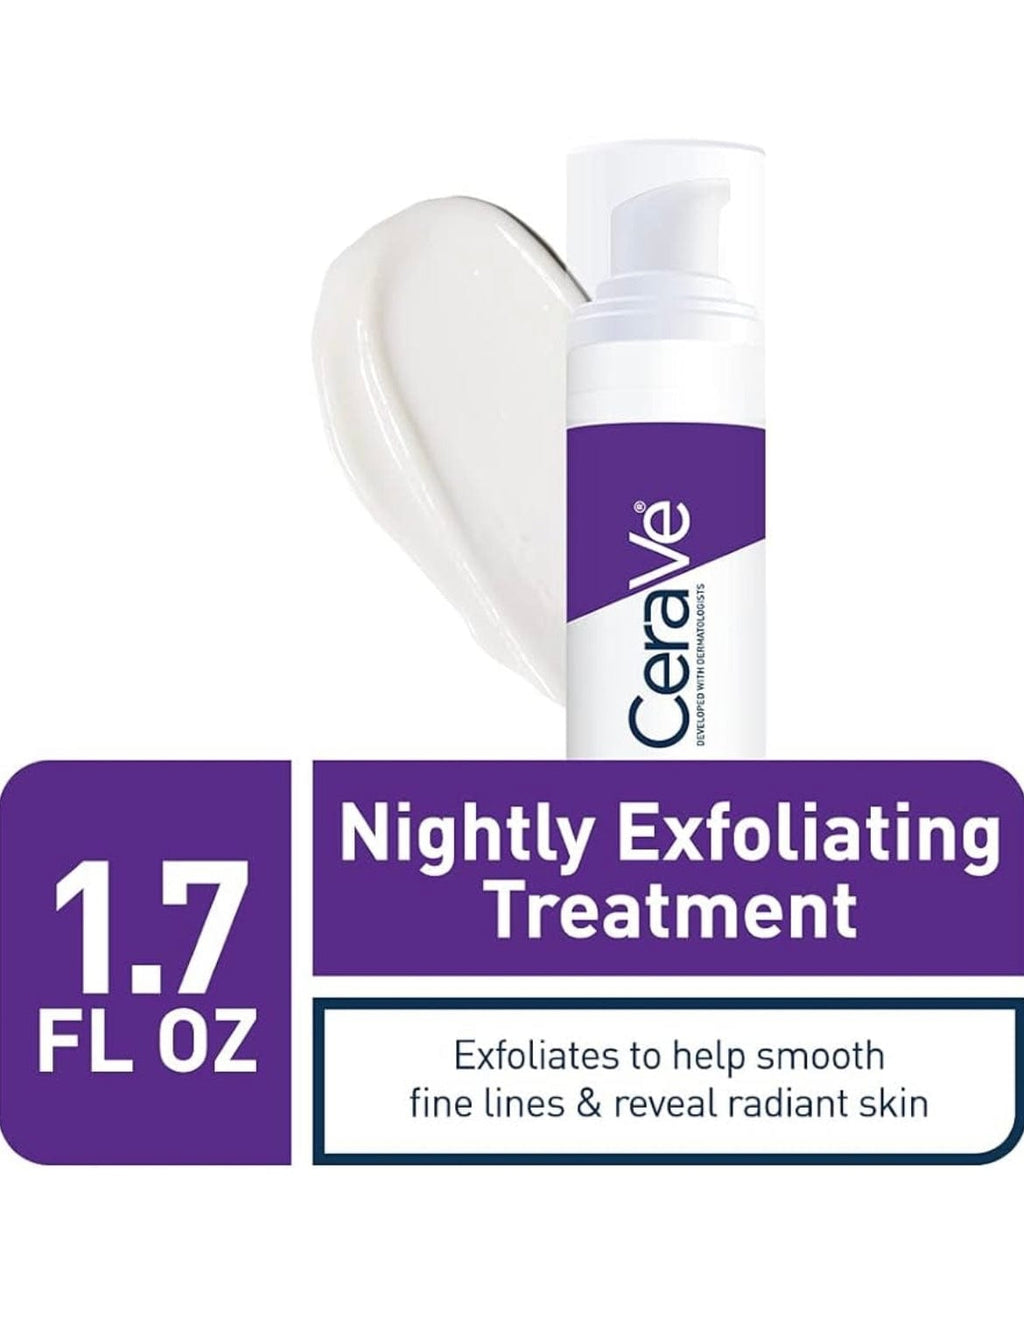 CeraVe Skin Renewing Nightly Exfoliating Treatment | Suero facial antienvejecimiento con ácido glicólico, ácido láctico y ceramidas | Corrector de manchas oscuras para la cara